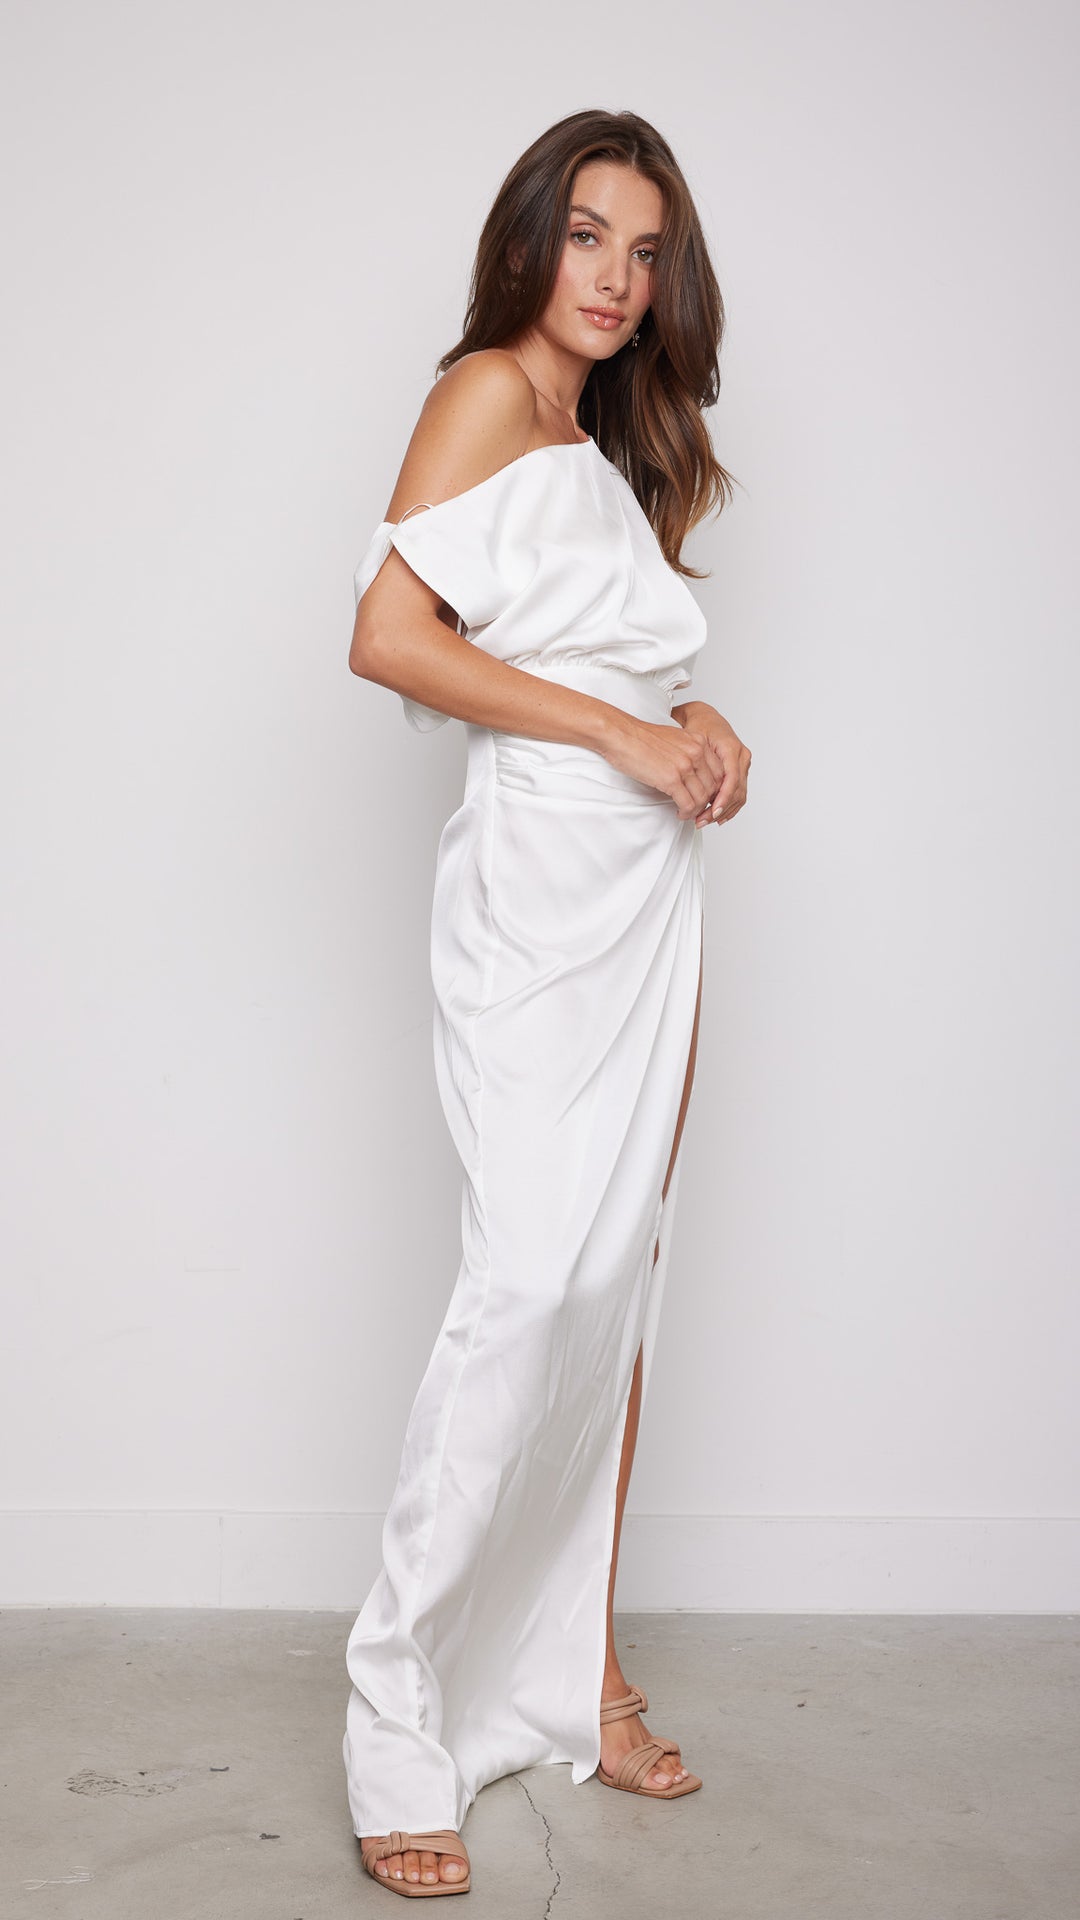 Nadia Maxi Dress in White